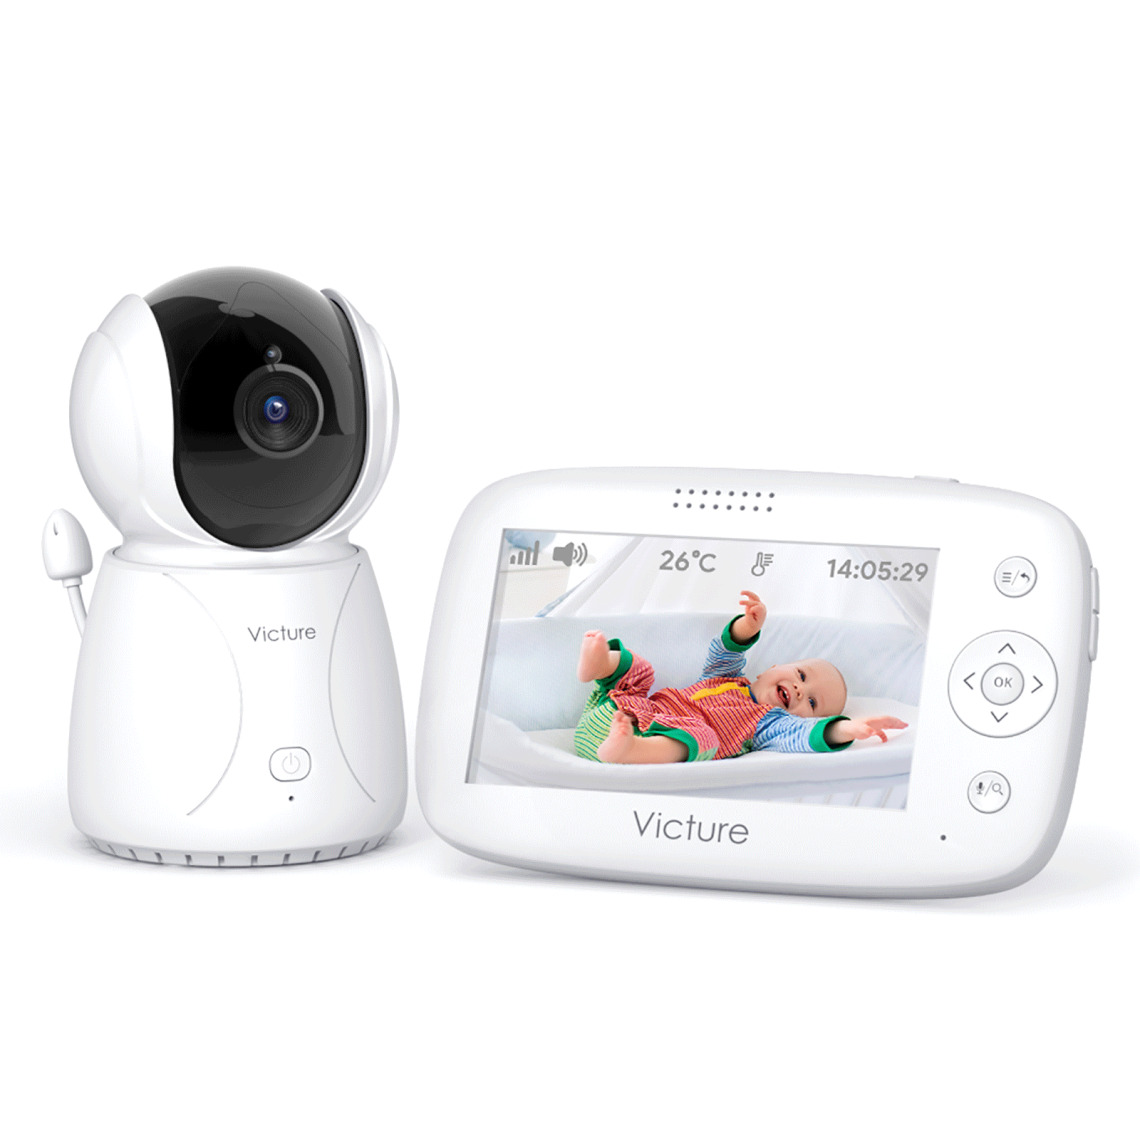 Victure - Babyphone Victure BM45 Caméra Moniteur bébé 4.3" LCD, Vidéo Bébé Surveillance, Batterie - Caméra de surveillance connectée